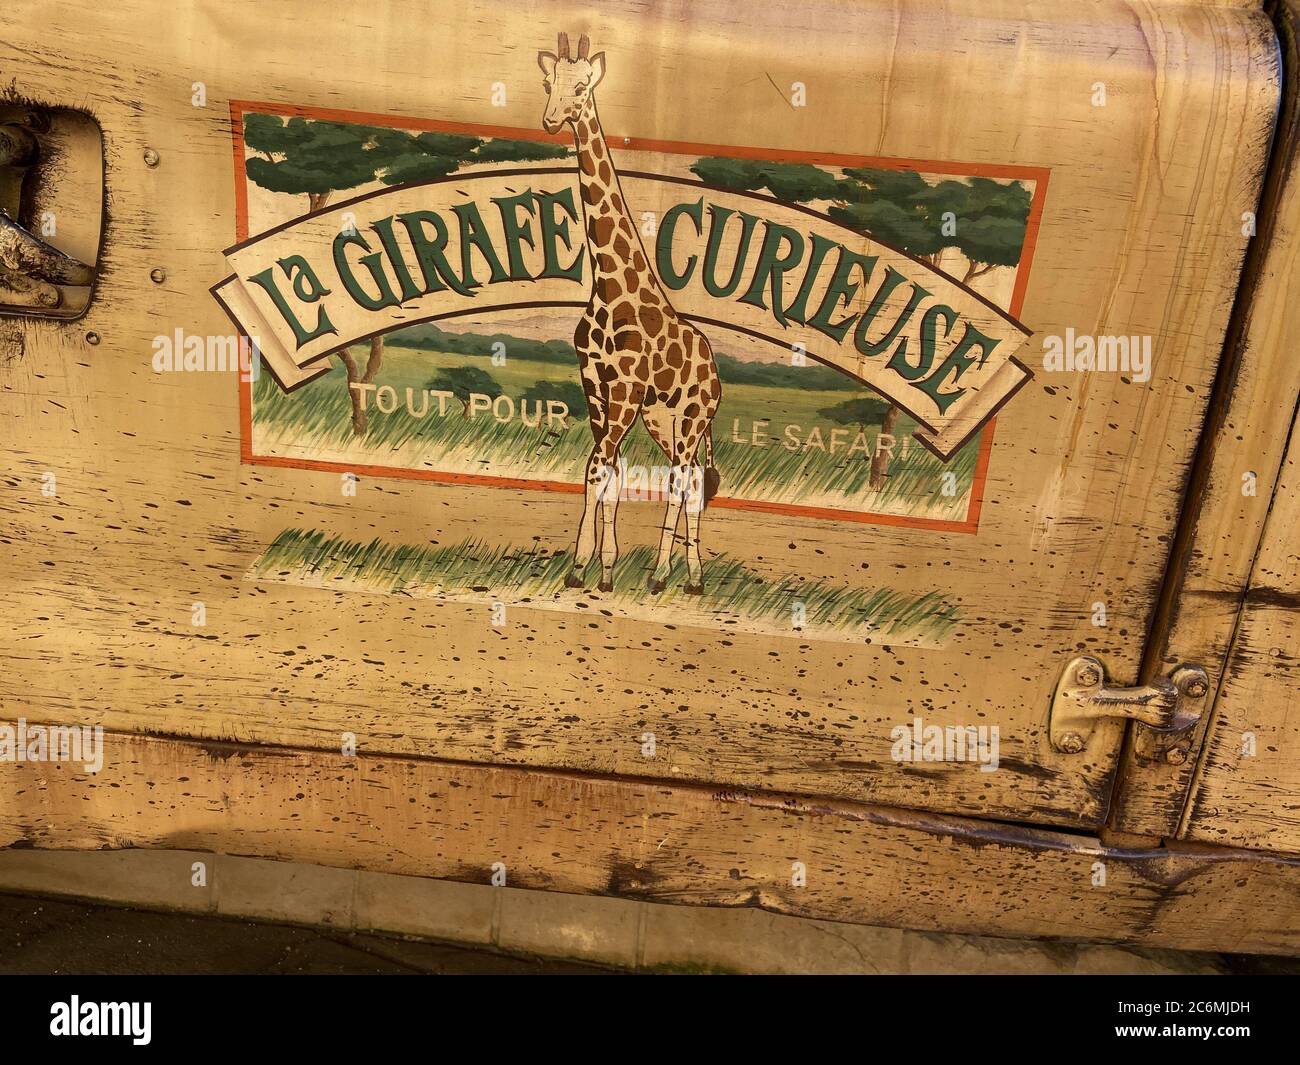 Paris , seine / France - 07 07 2020 : la girafe curieuse texte enseigne et logo magasin d'accessoires inspirés de la jungle dans les Parcs Disney disneyland paris Banque D'Images